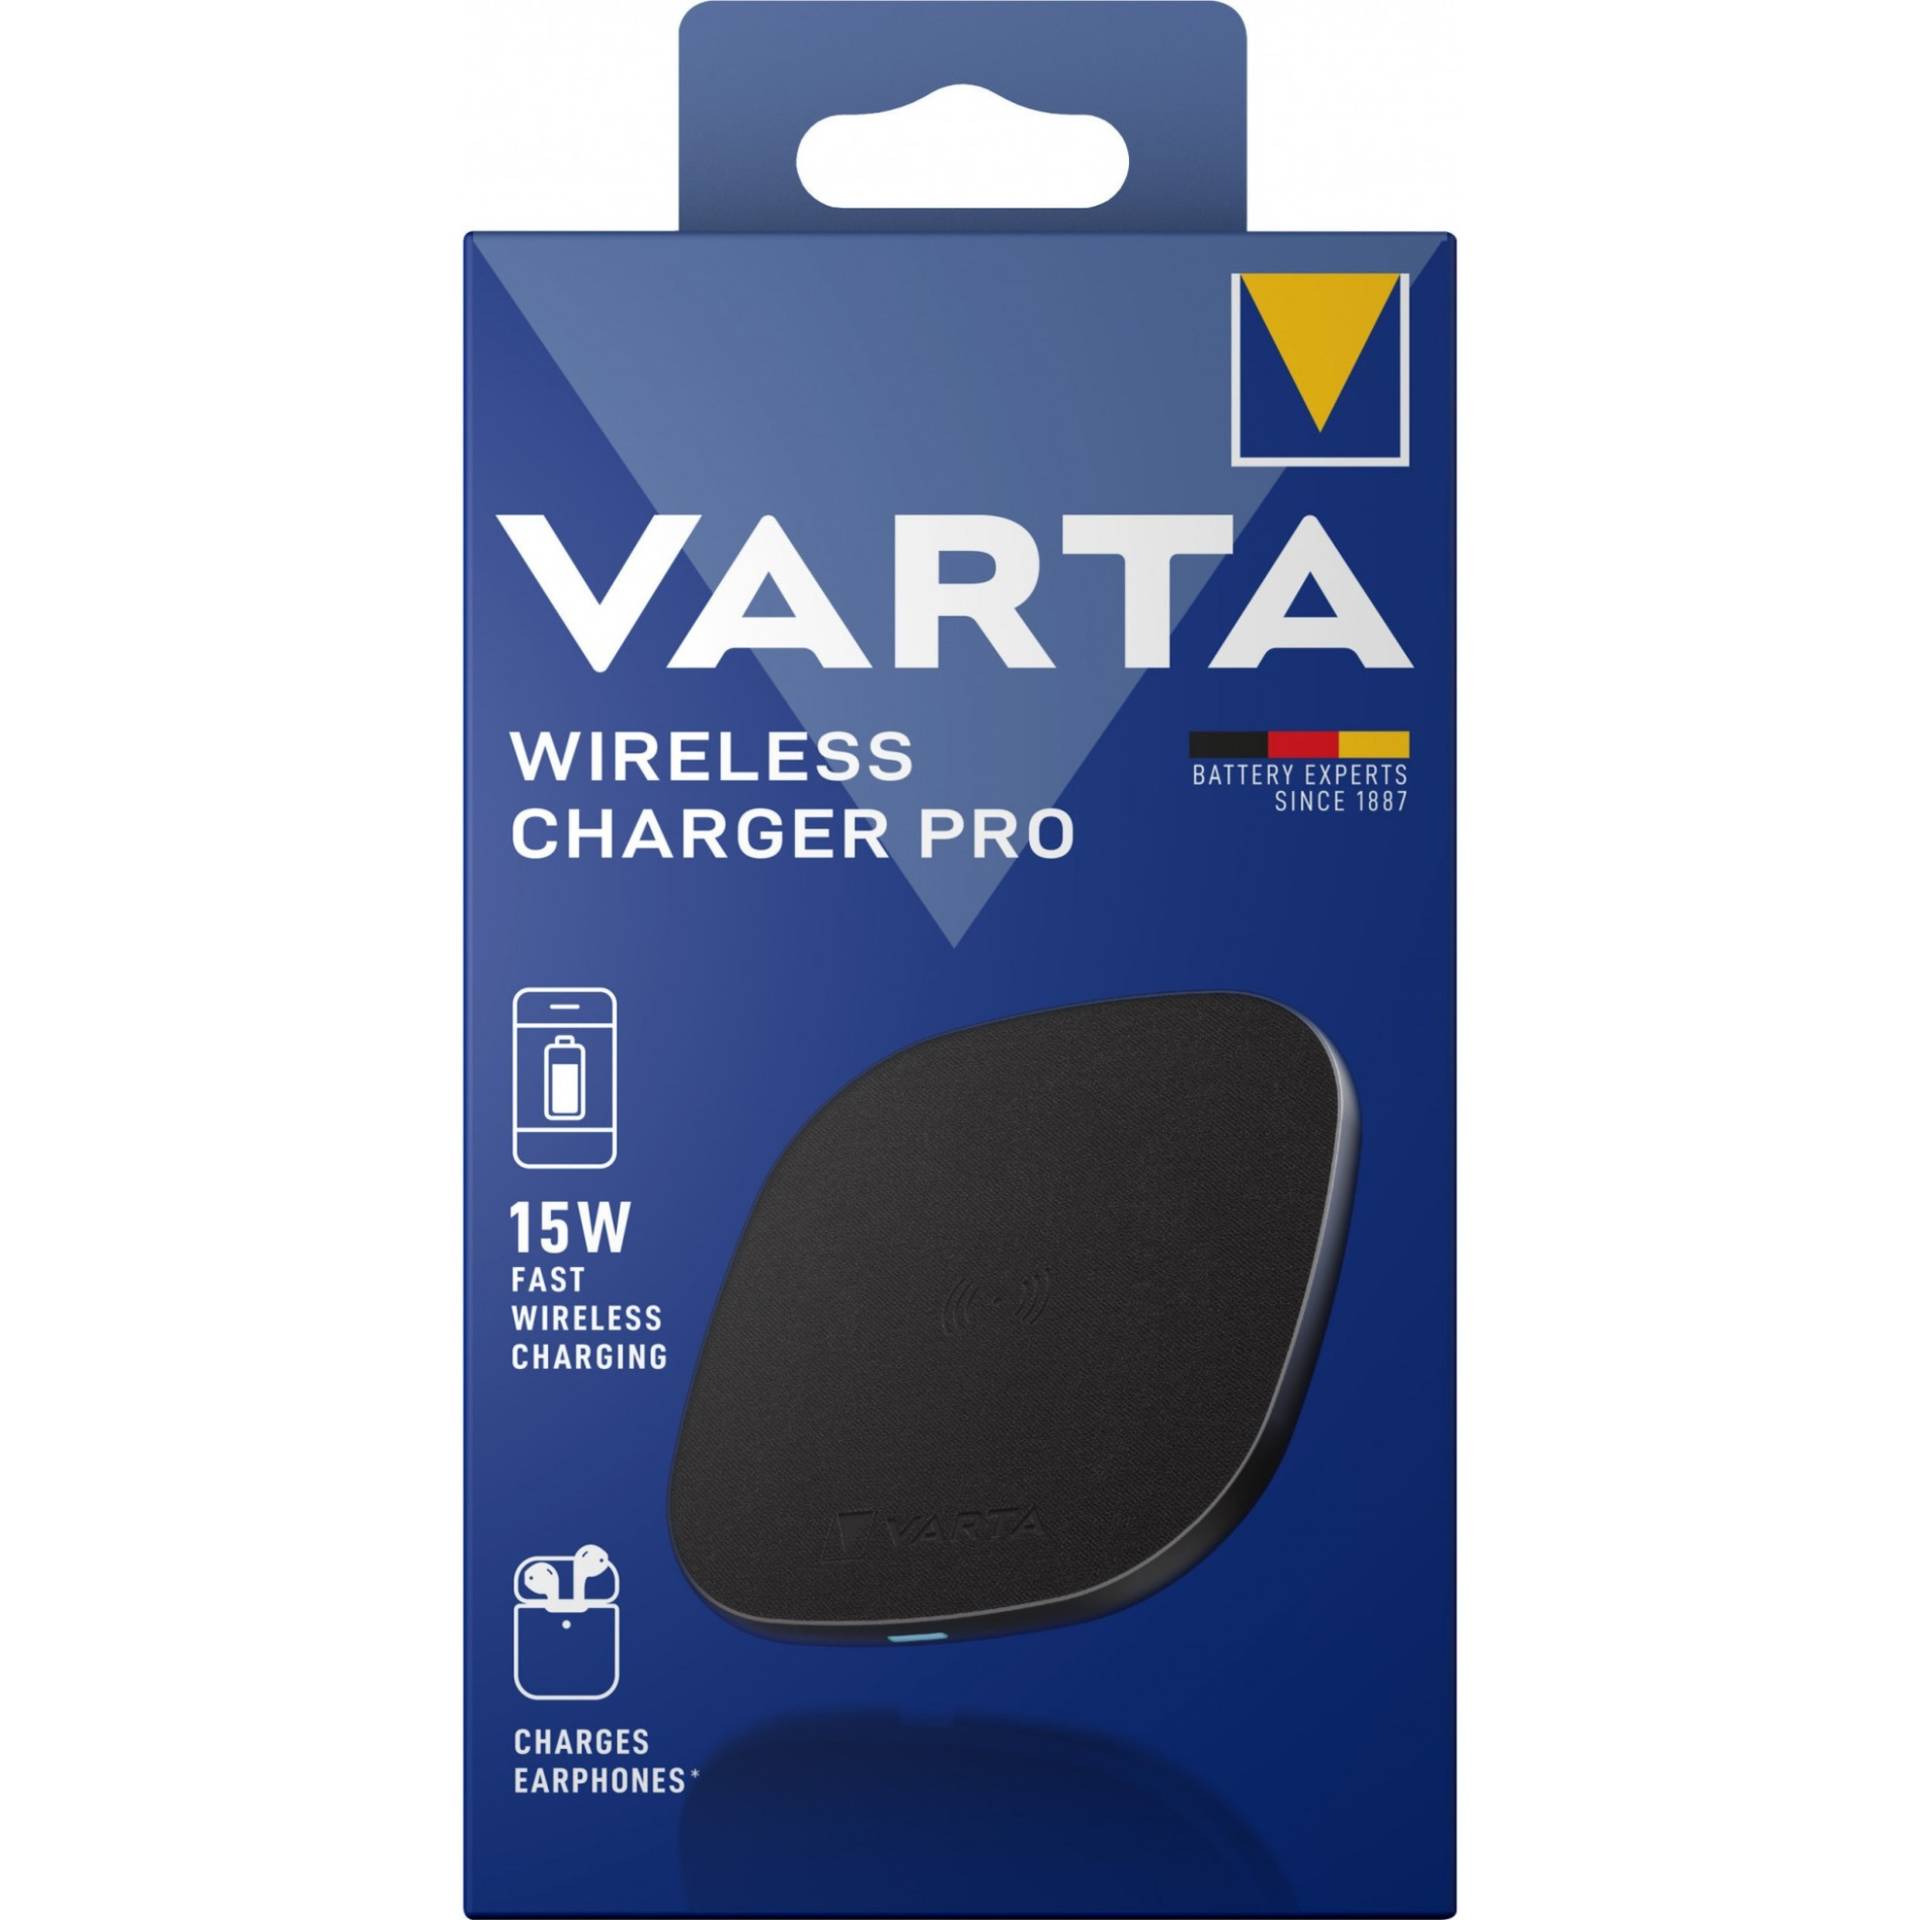 Wireless Charger Pro, Ladegerät von Varta